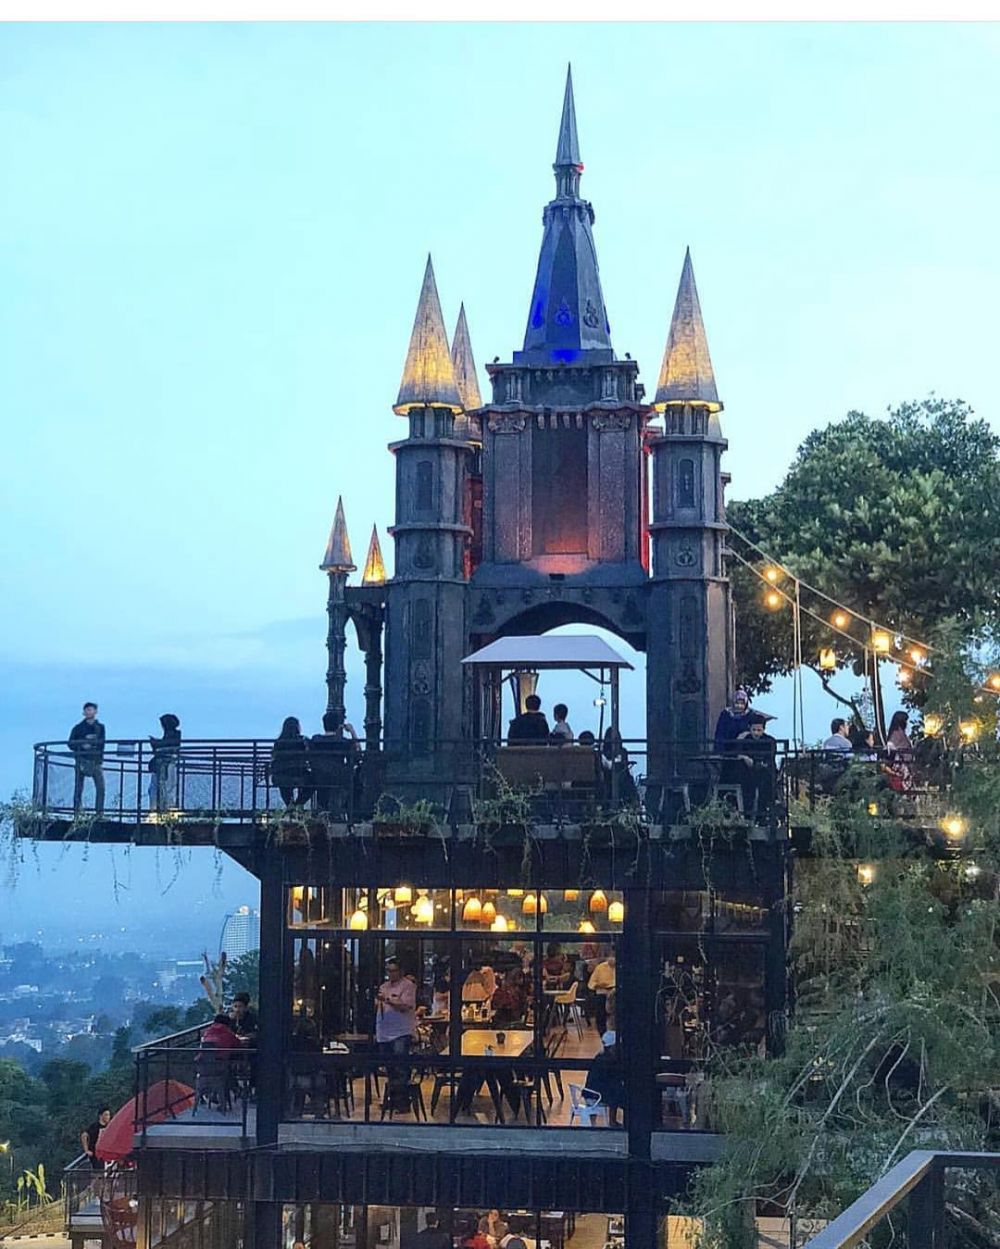 Tempat Wisata Di Kota Bandung 2019